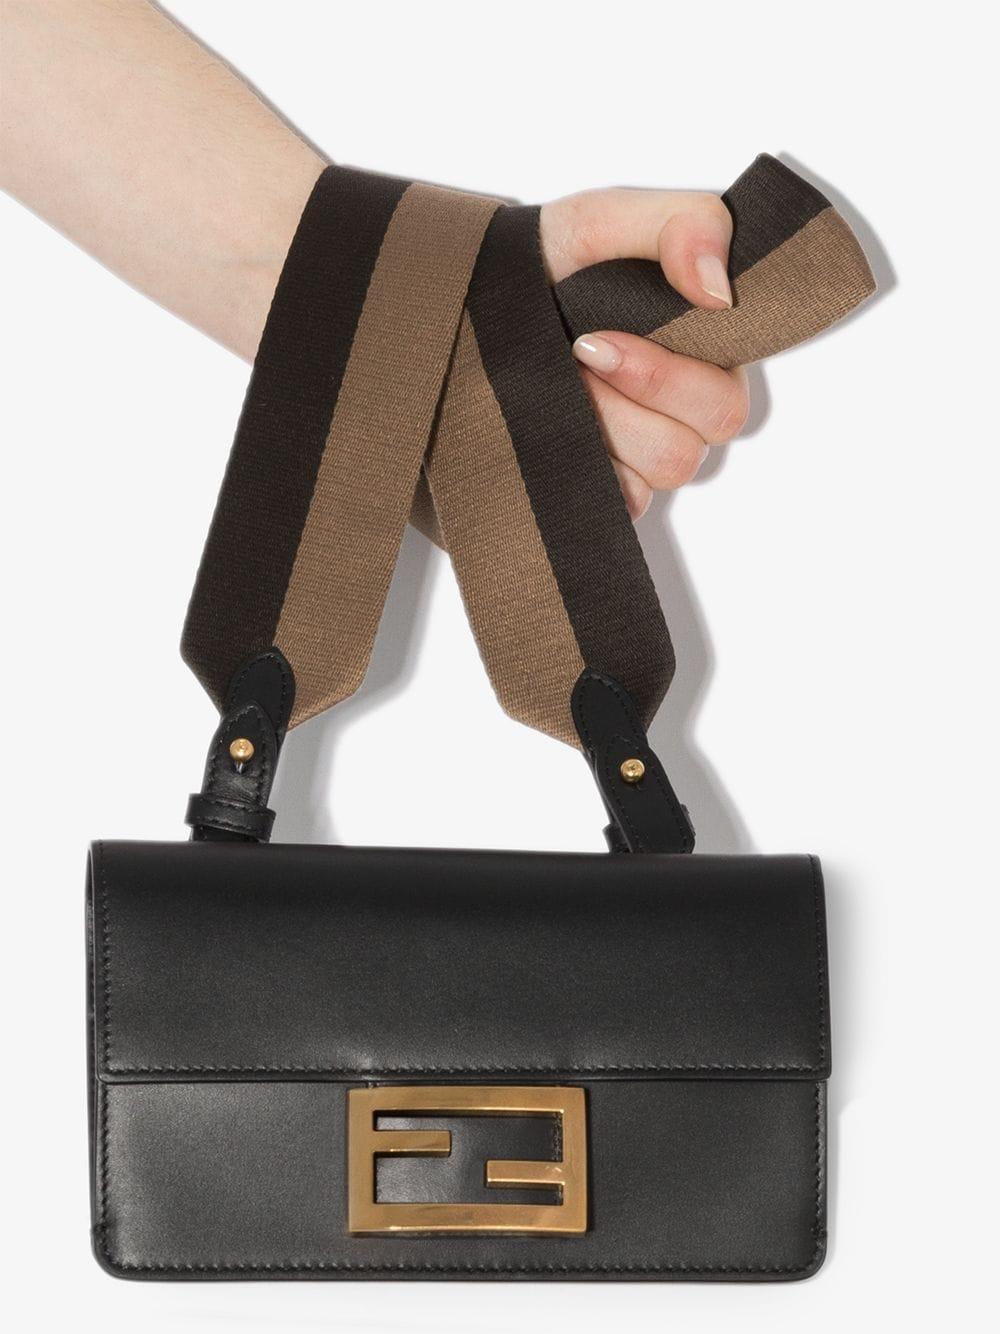 Fendi Baguette Web Stripe Mini Bag in 